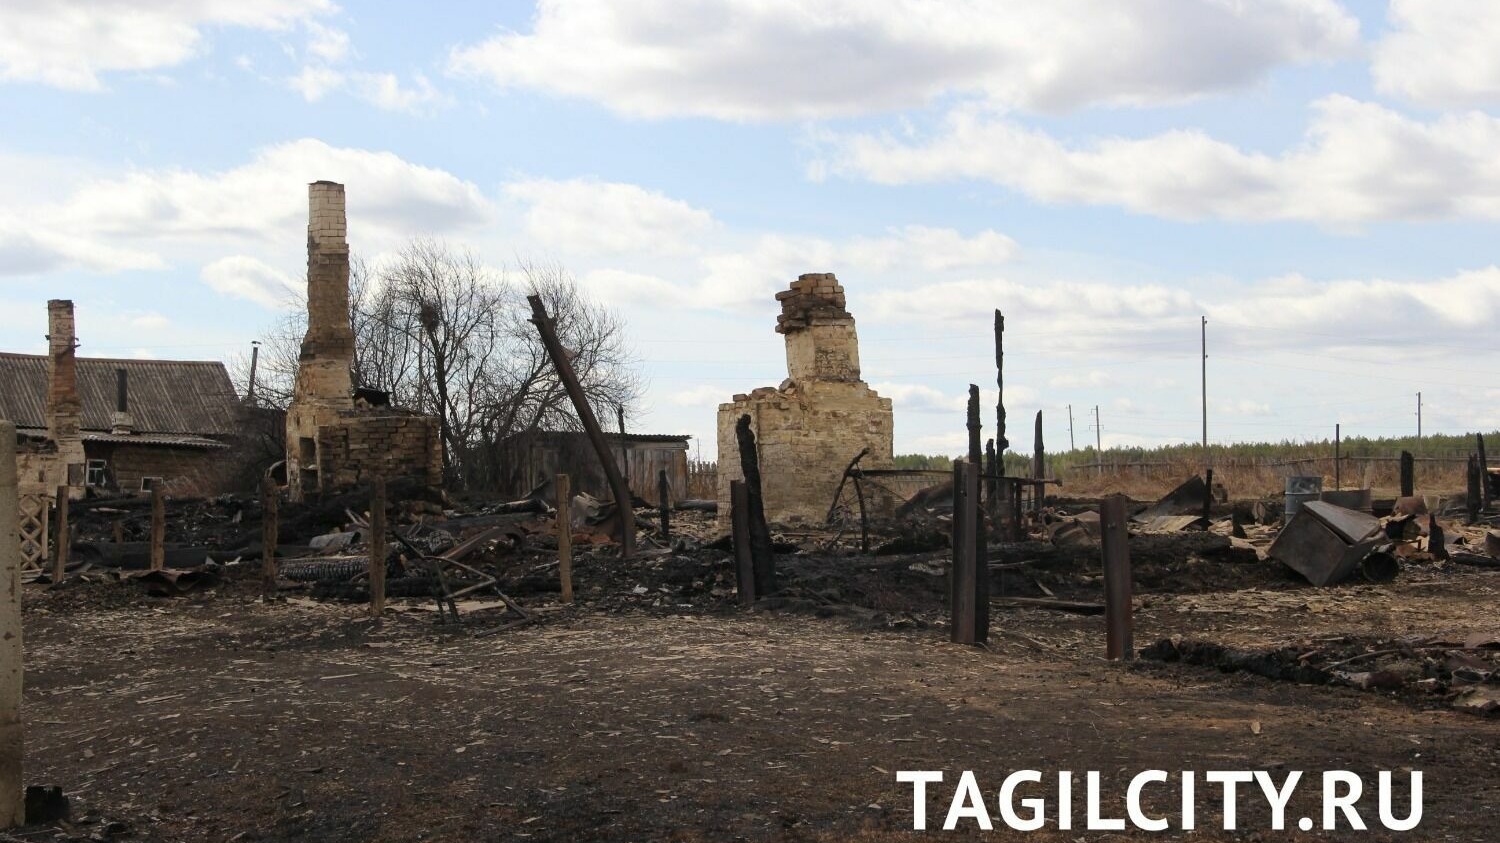 Причины пожара в Бызово под Нижним Тагилом не установлены спустя полгода